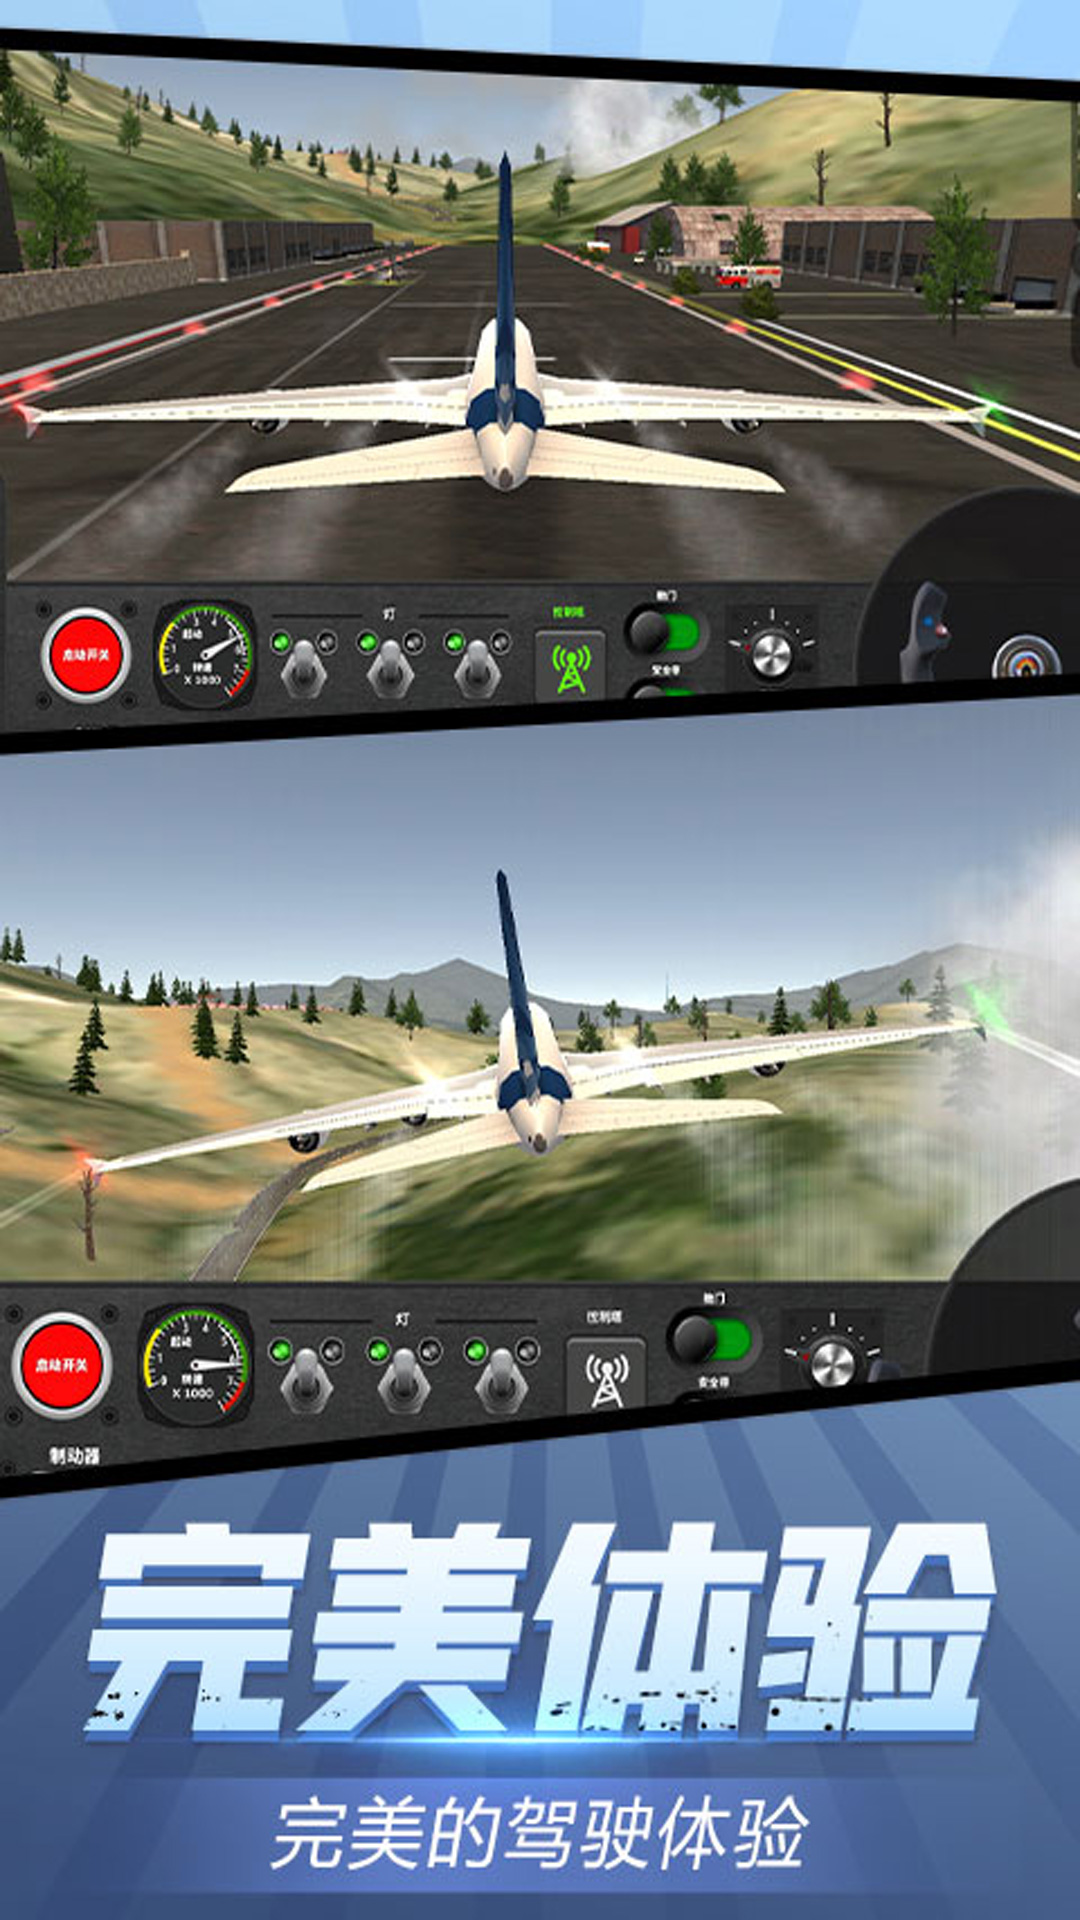 安全飞行模拟器游戏官方手机版截图3: